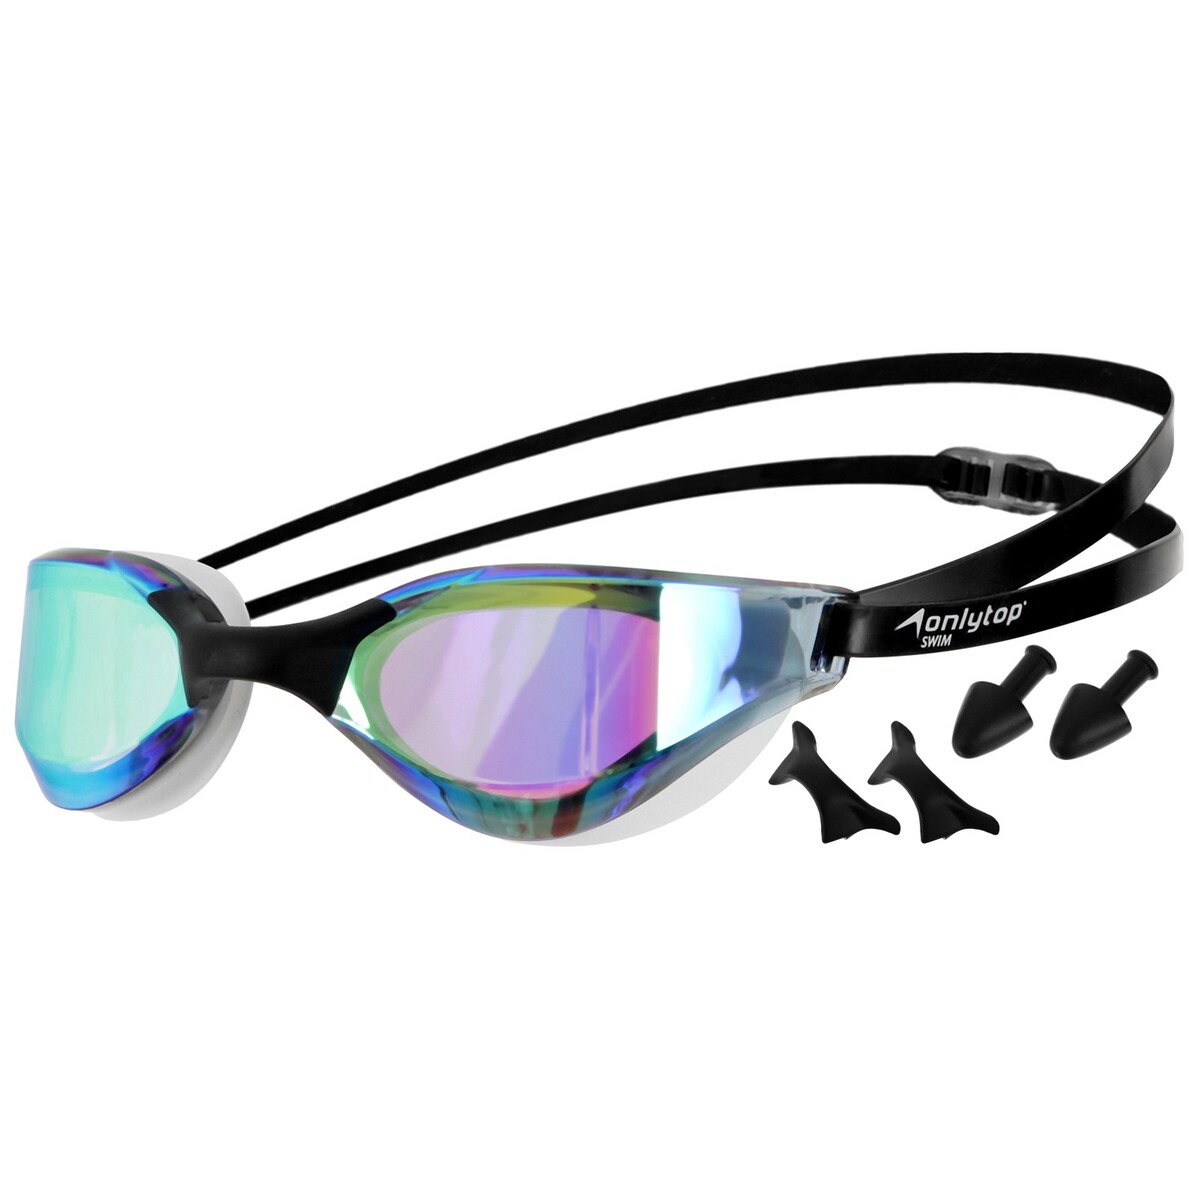 Очки для плавания взрослые + набор носовых перемычек и беруши, с зеркальным радужным покрытием ONLYTOP, цвет черный